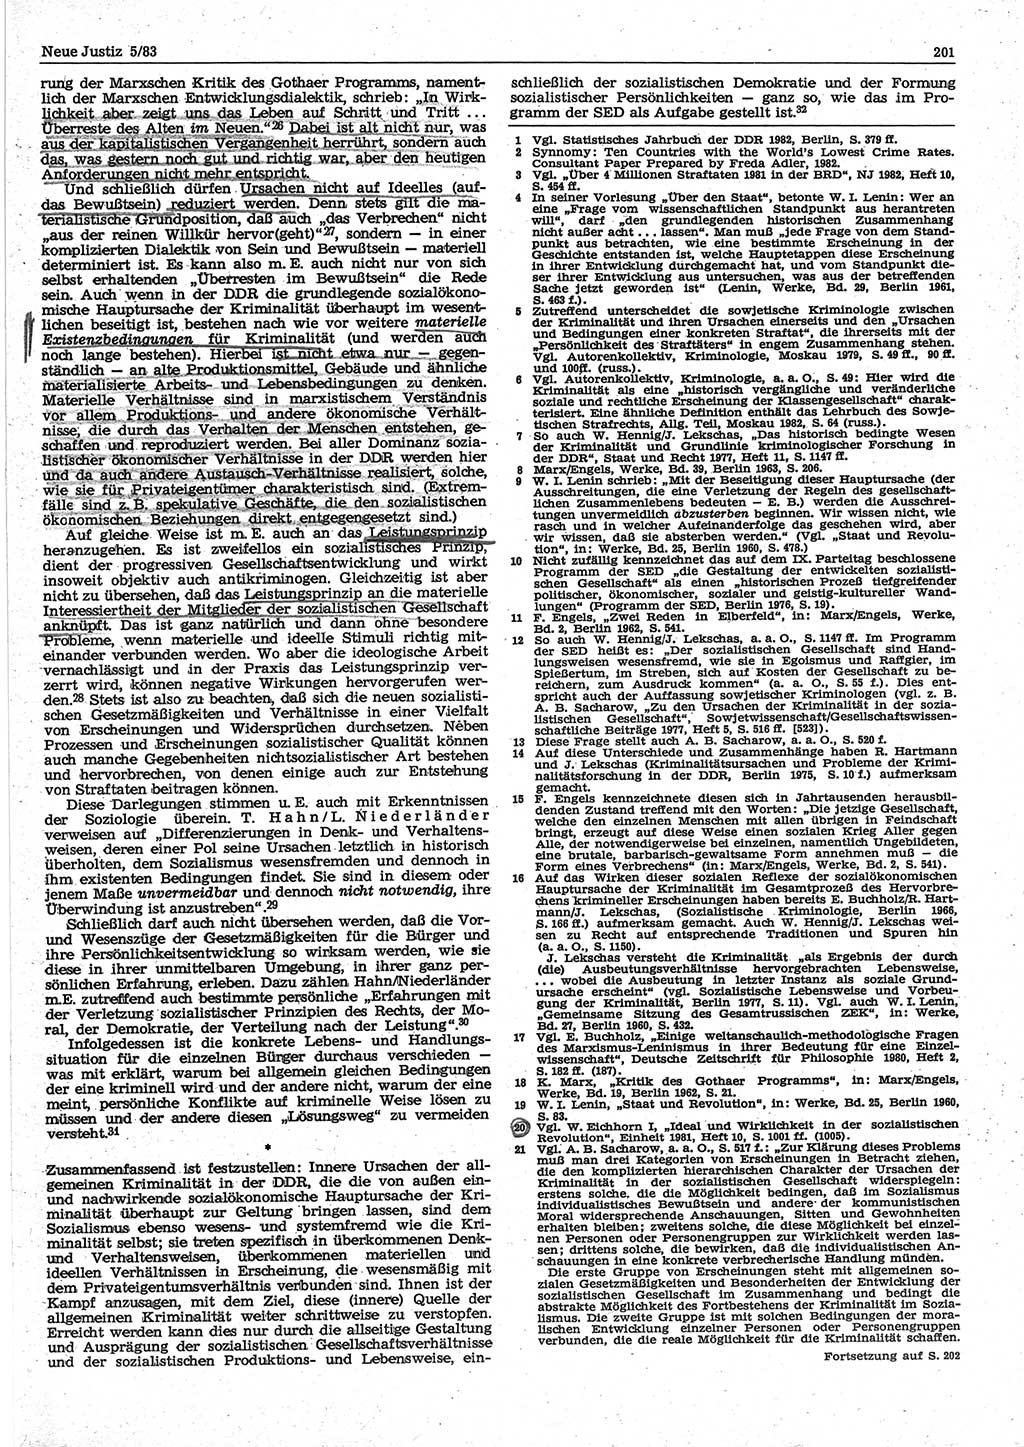 Neue Justiz (NJ), Zeitschrift für sozialistisches Recht und Gesetzlichkeit [Deutsche Demokratische Republik (DDR)], 37. Jahrgang 1983, Seite 201 (NJ DDR 1983, S. 201)